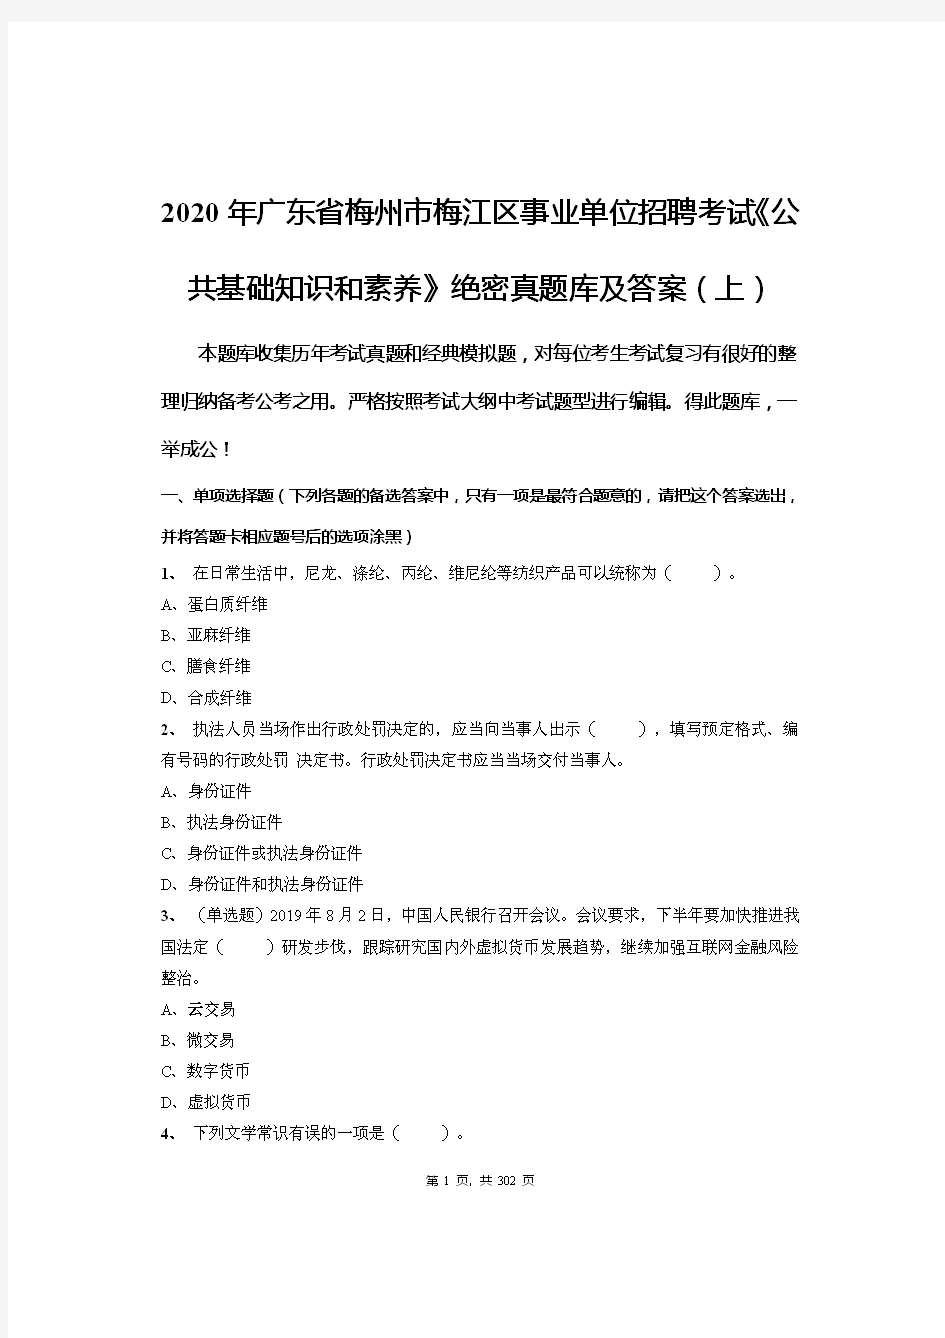 2020年广东省梅州市梅江区事业单位招聘考试《公共基础知识和素养》绝密真题库及答案(上)